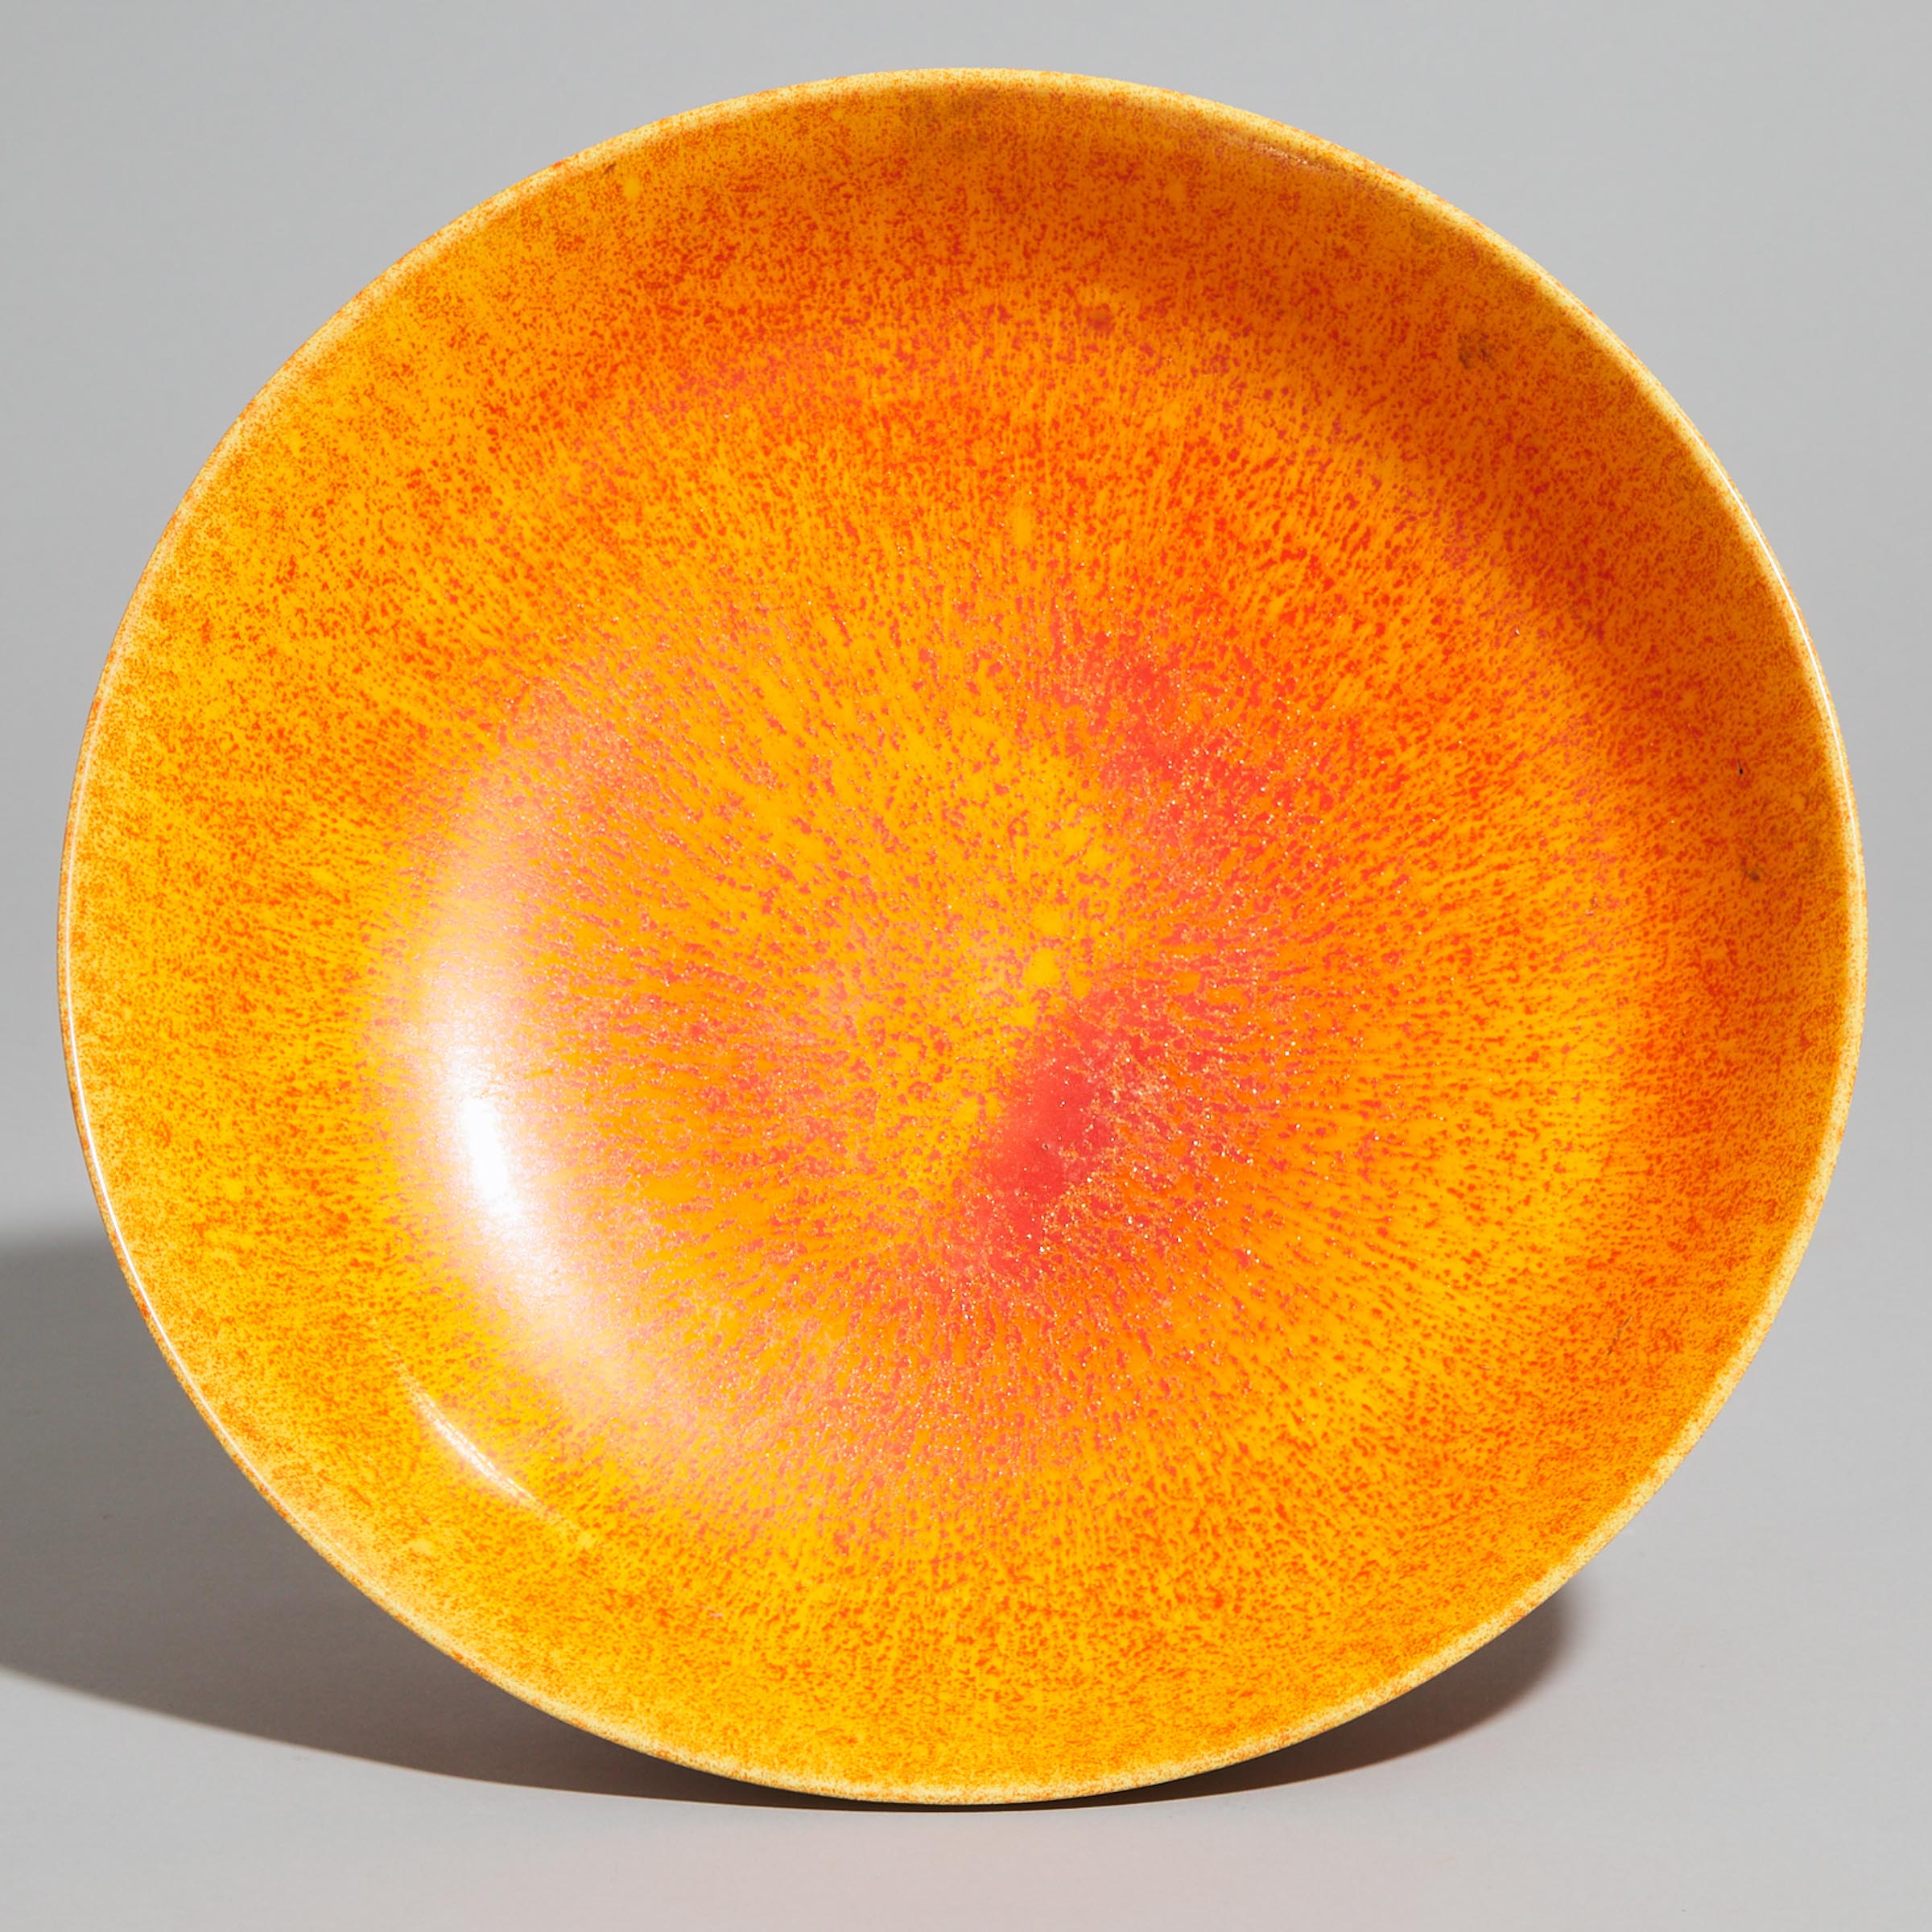 Pilkington's Royal Lancastrian Mottled Orange Glazed Fruit Bowl, c.1920-38